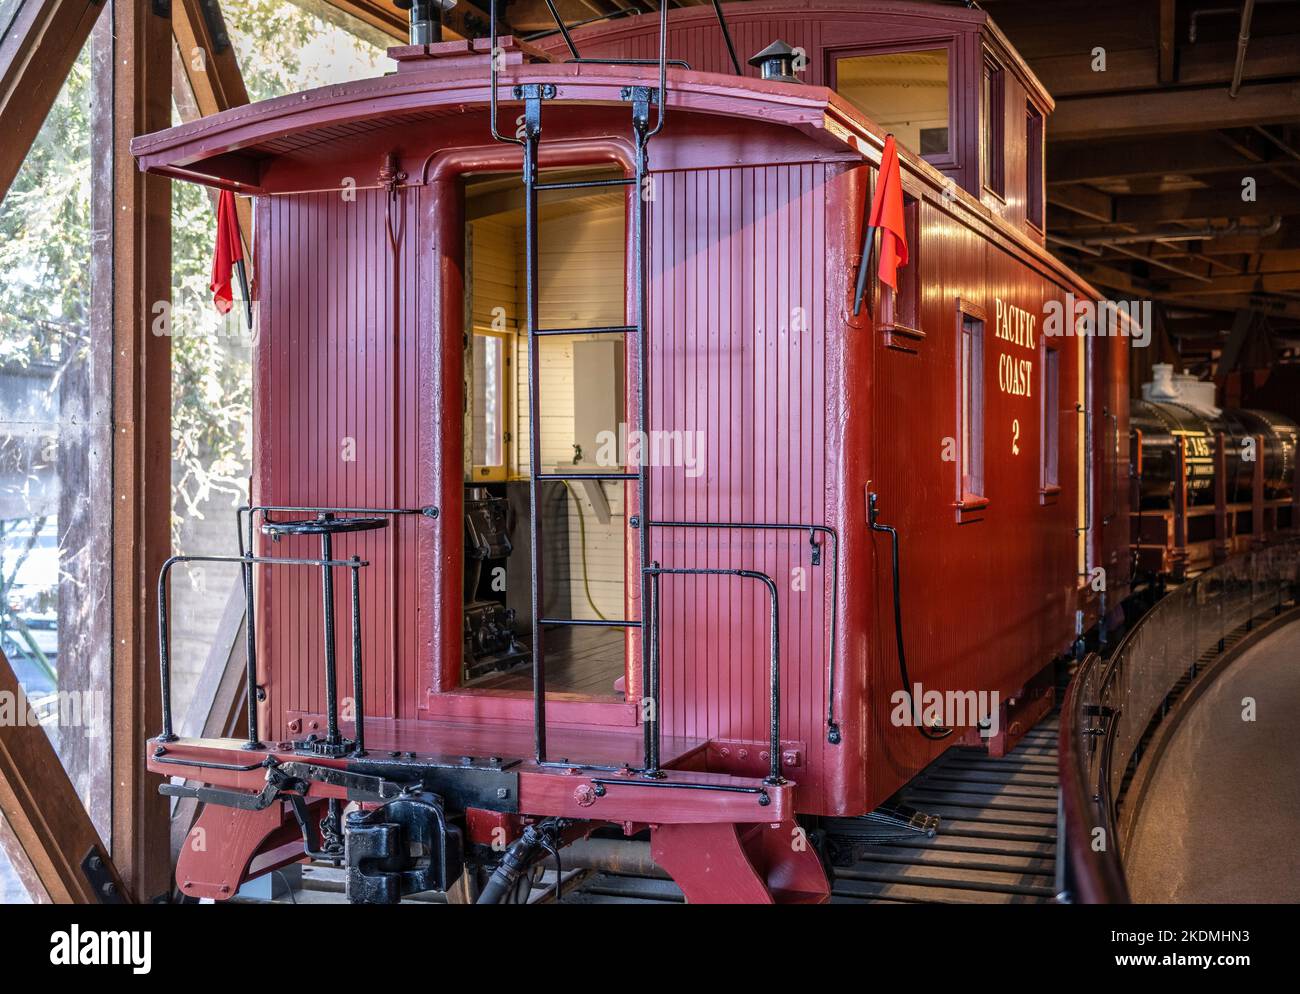 Die rote Kaboose war am Ende aller amerikanischen und kanadischen Güterwagen, um der Besatzung, die im Zug arbeitete, die den Wechsel A machte, Schutz zu bieten Stockfoto